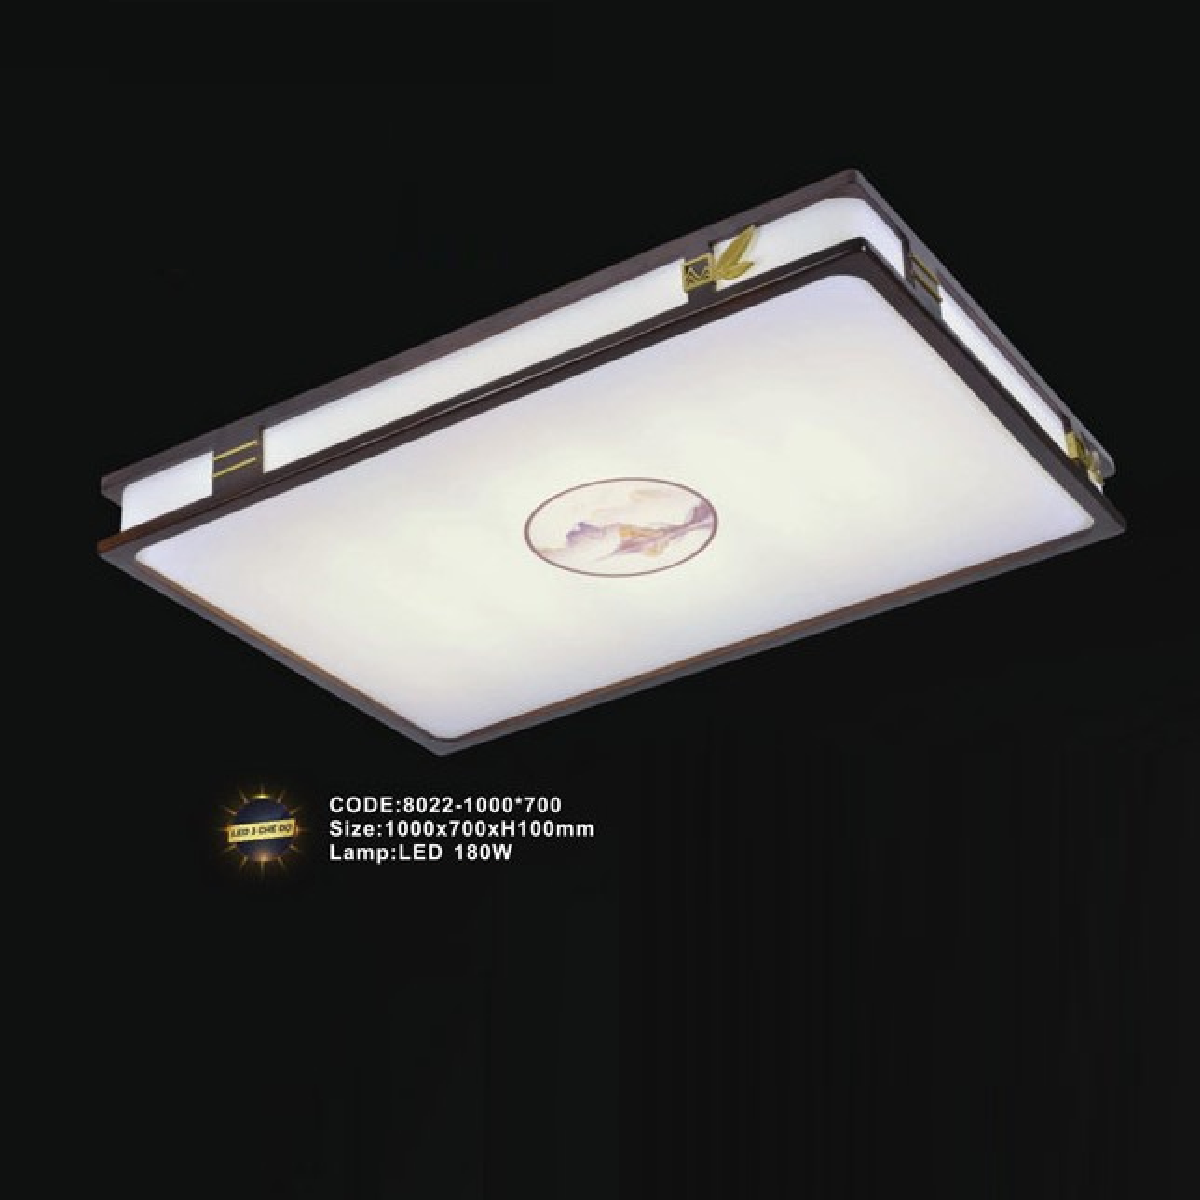 CODE: 8022-1000*700: Đèn áp trần LED - KT: L1000mm x W700mm x H100mm - Đèn LED 180W  ánh sáng đổi 3 màu